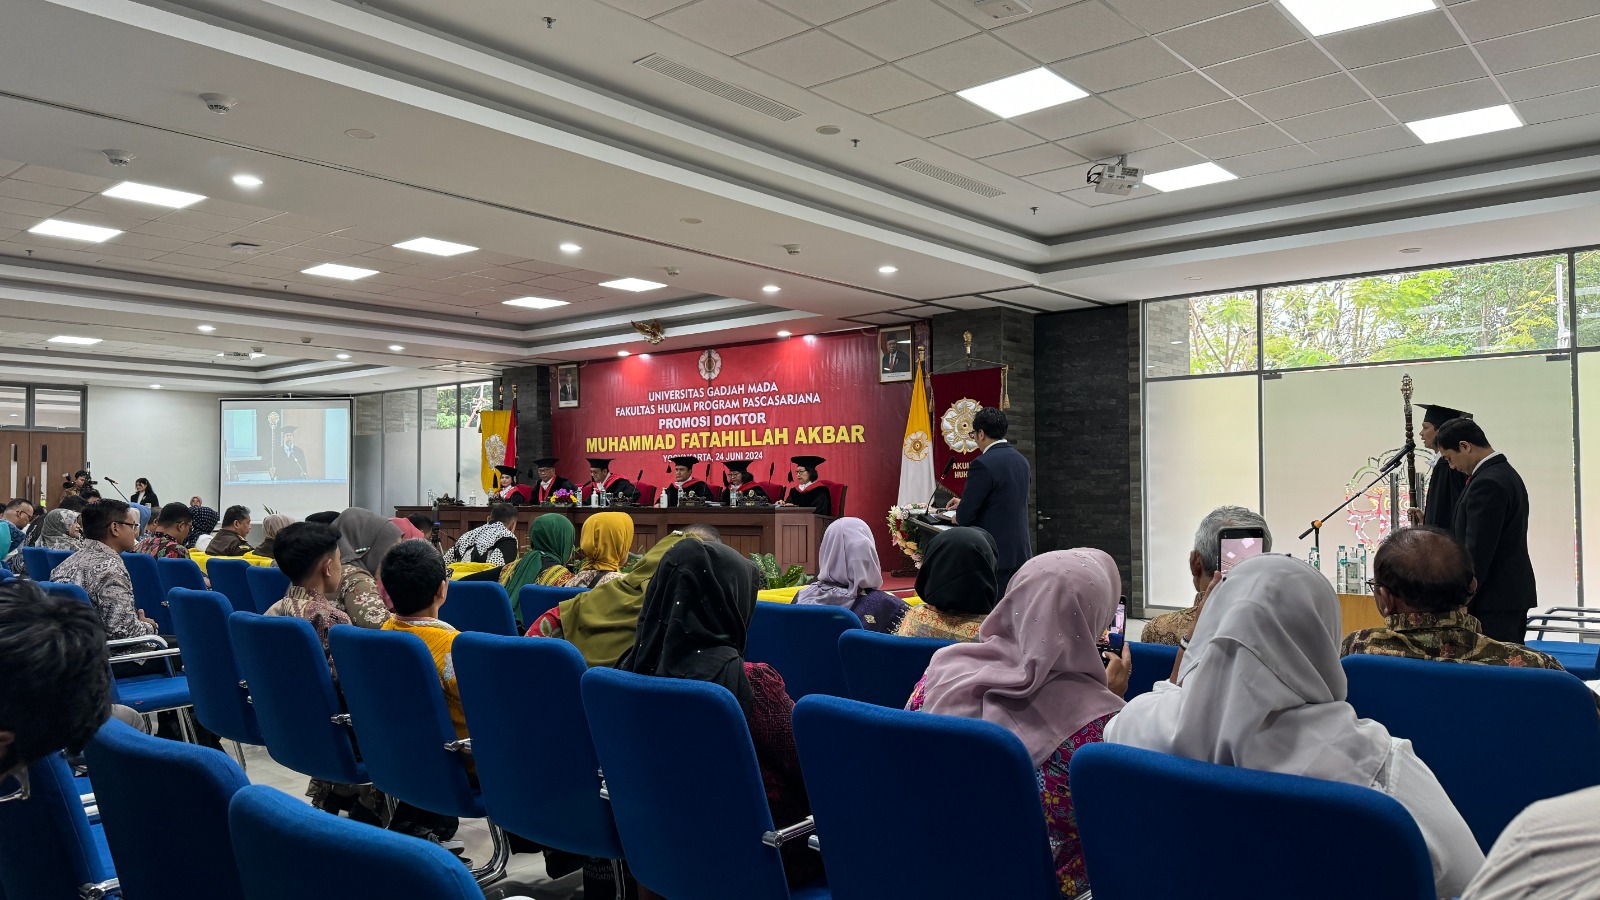 Ketua Pengadilan Negeri Yogyakarta Menghadiri Ujian Terbuka Program Doktor Fakultas Hukum Universitas Gadjah Mada